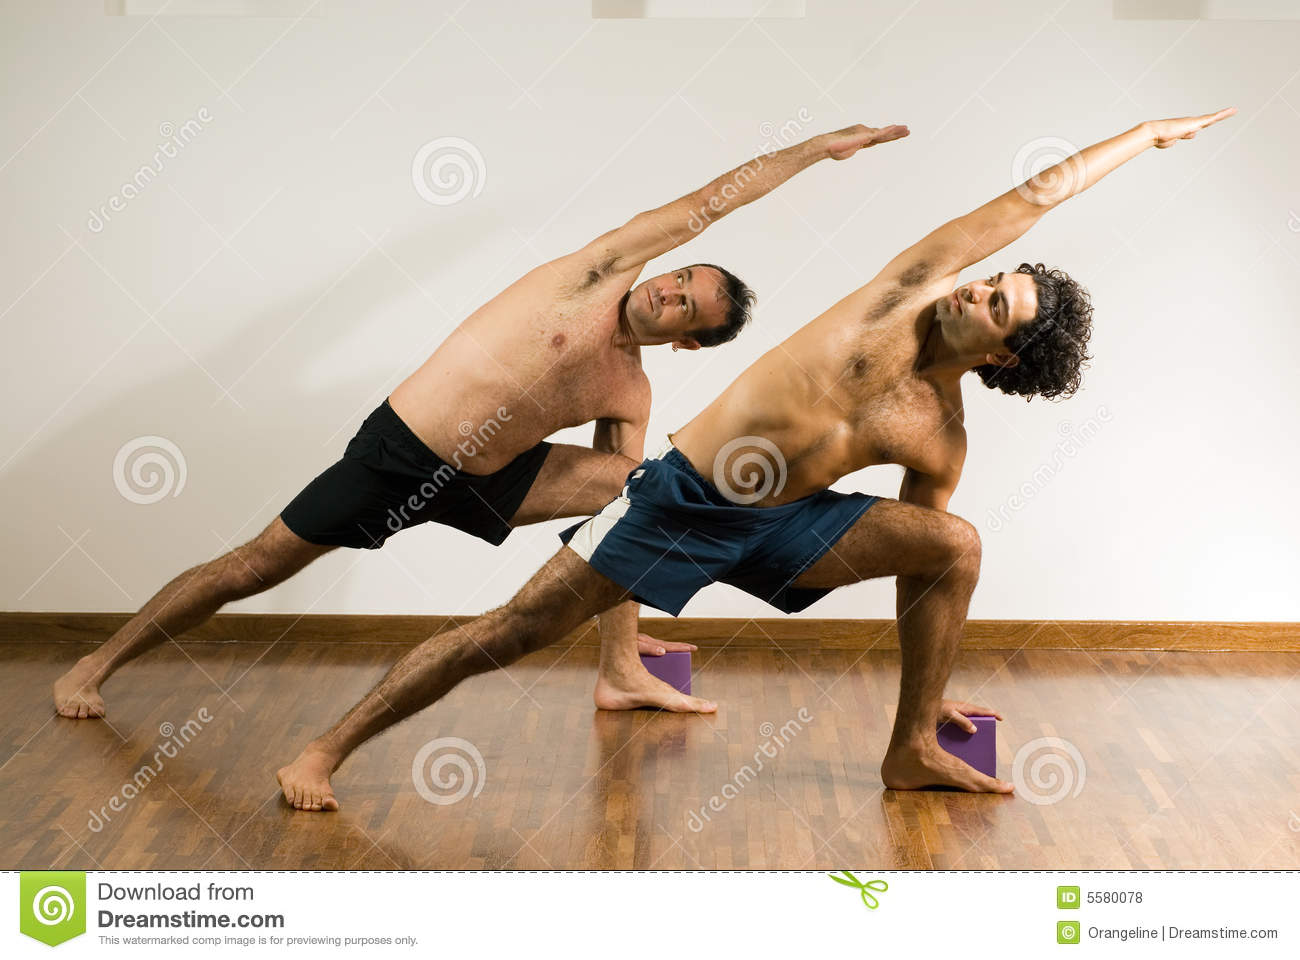 men-stretching-horizontal-5580078.jpg